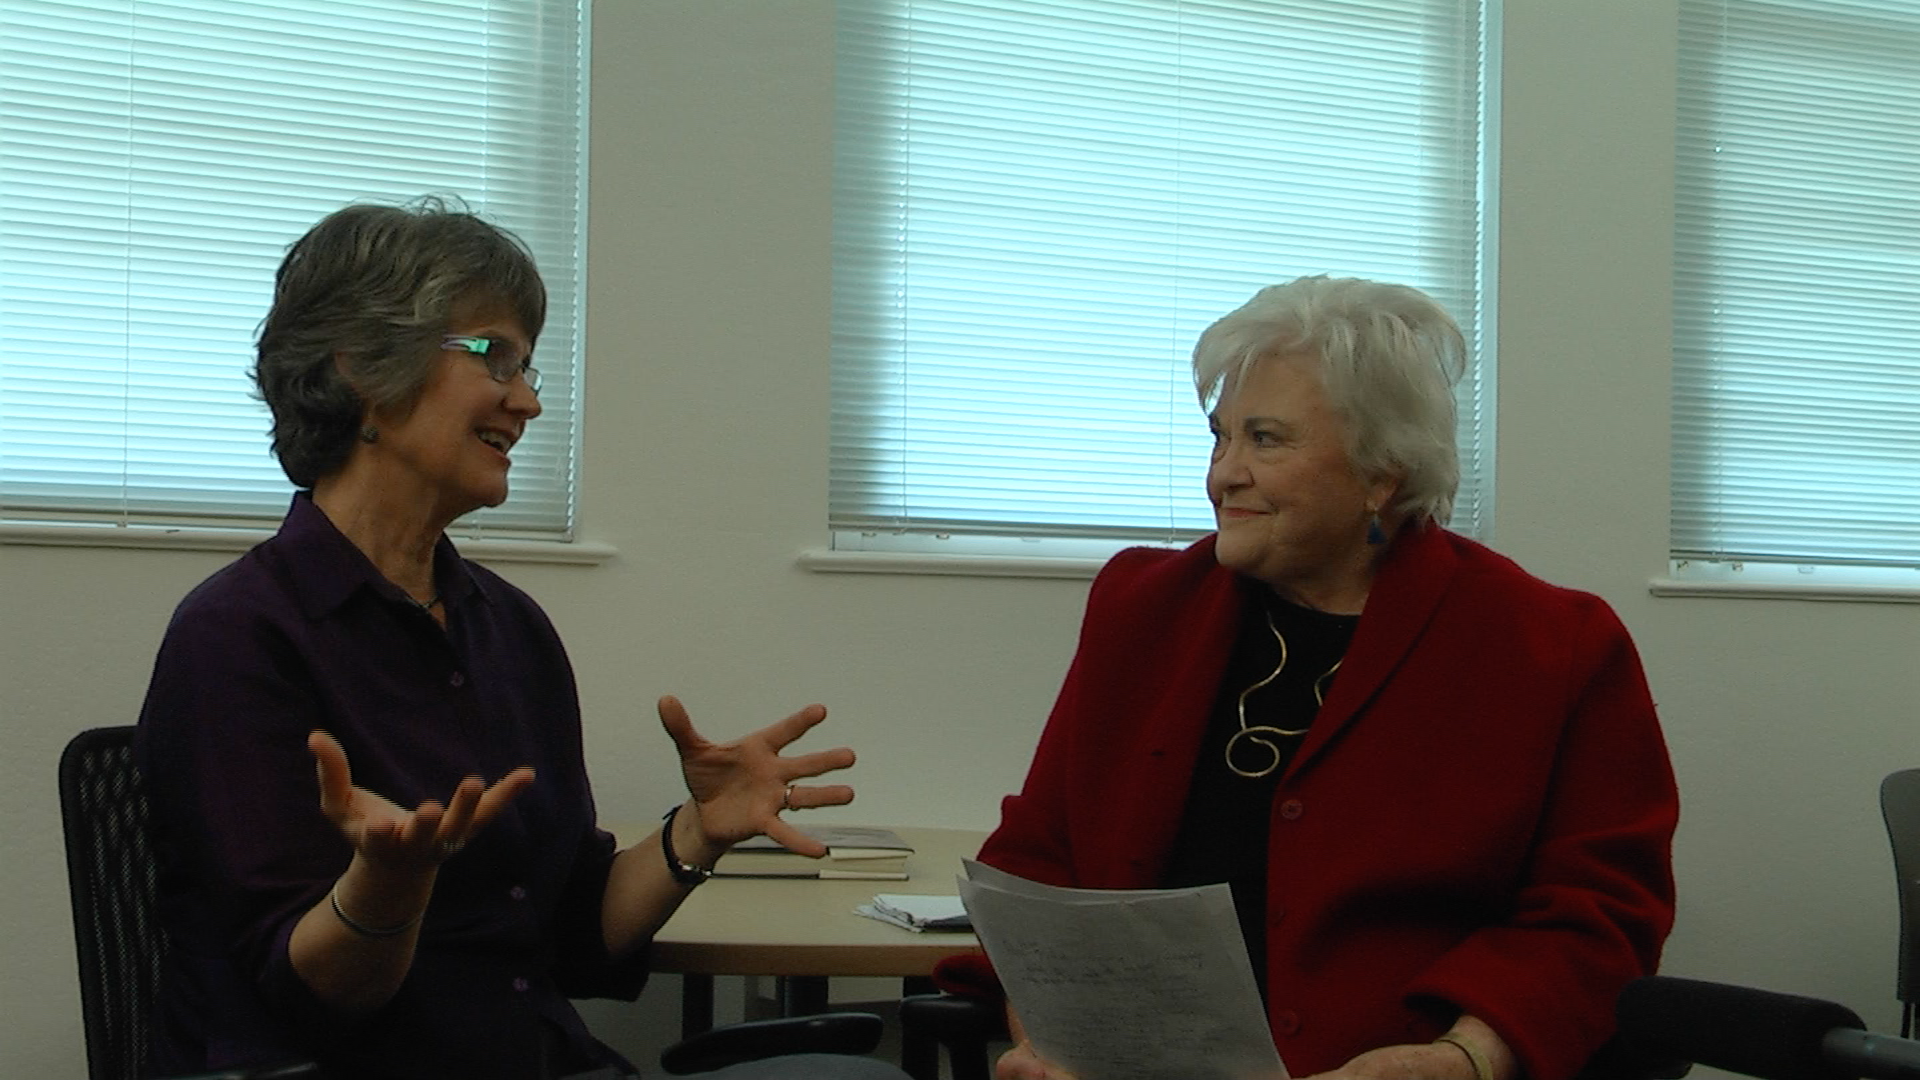 Glenis McKenzie Interviews with Dr. Benner